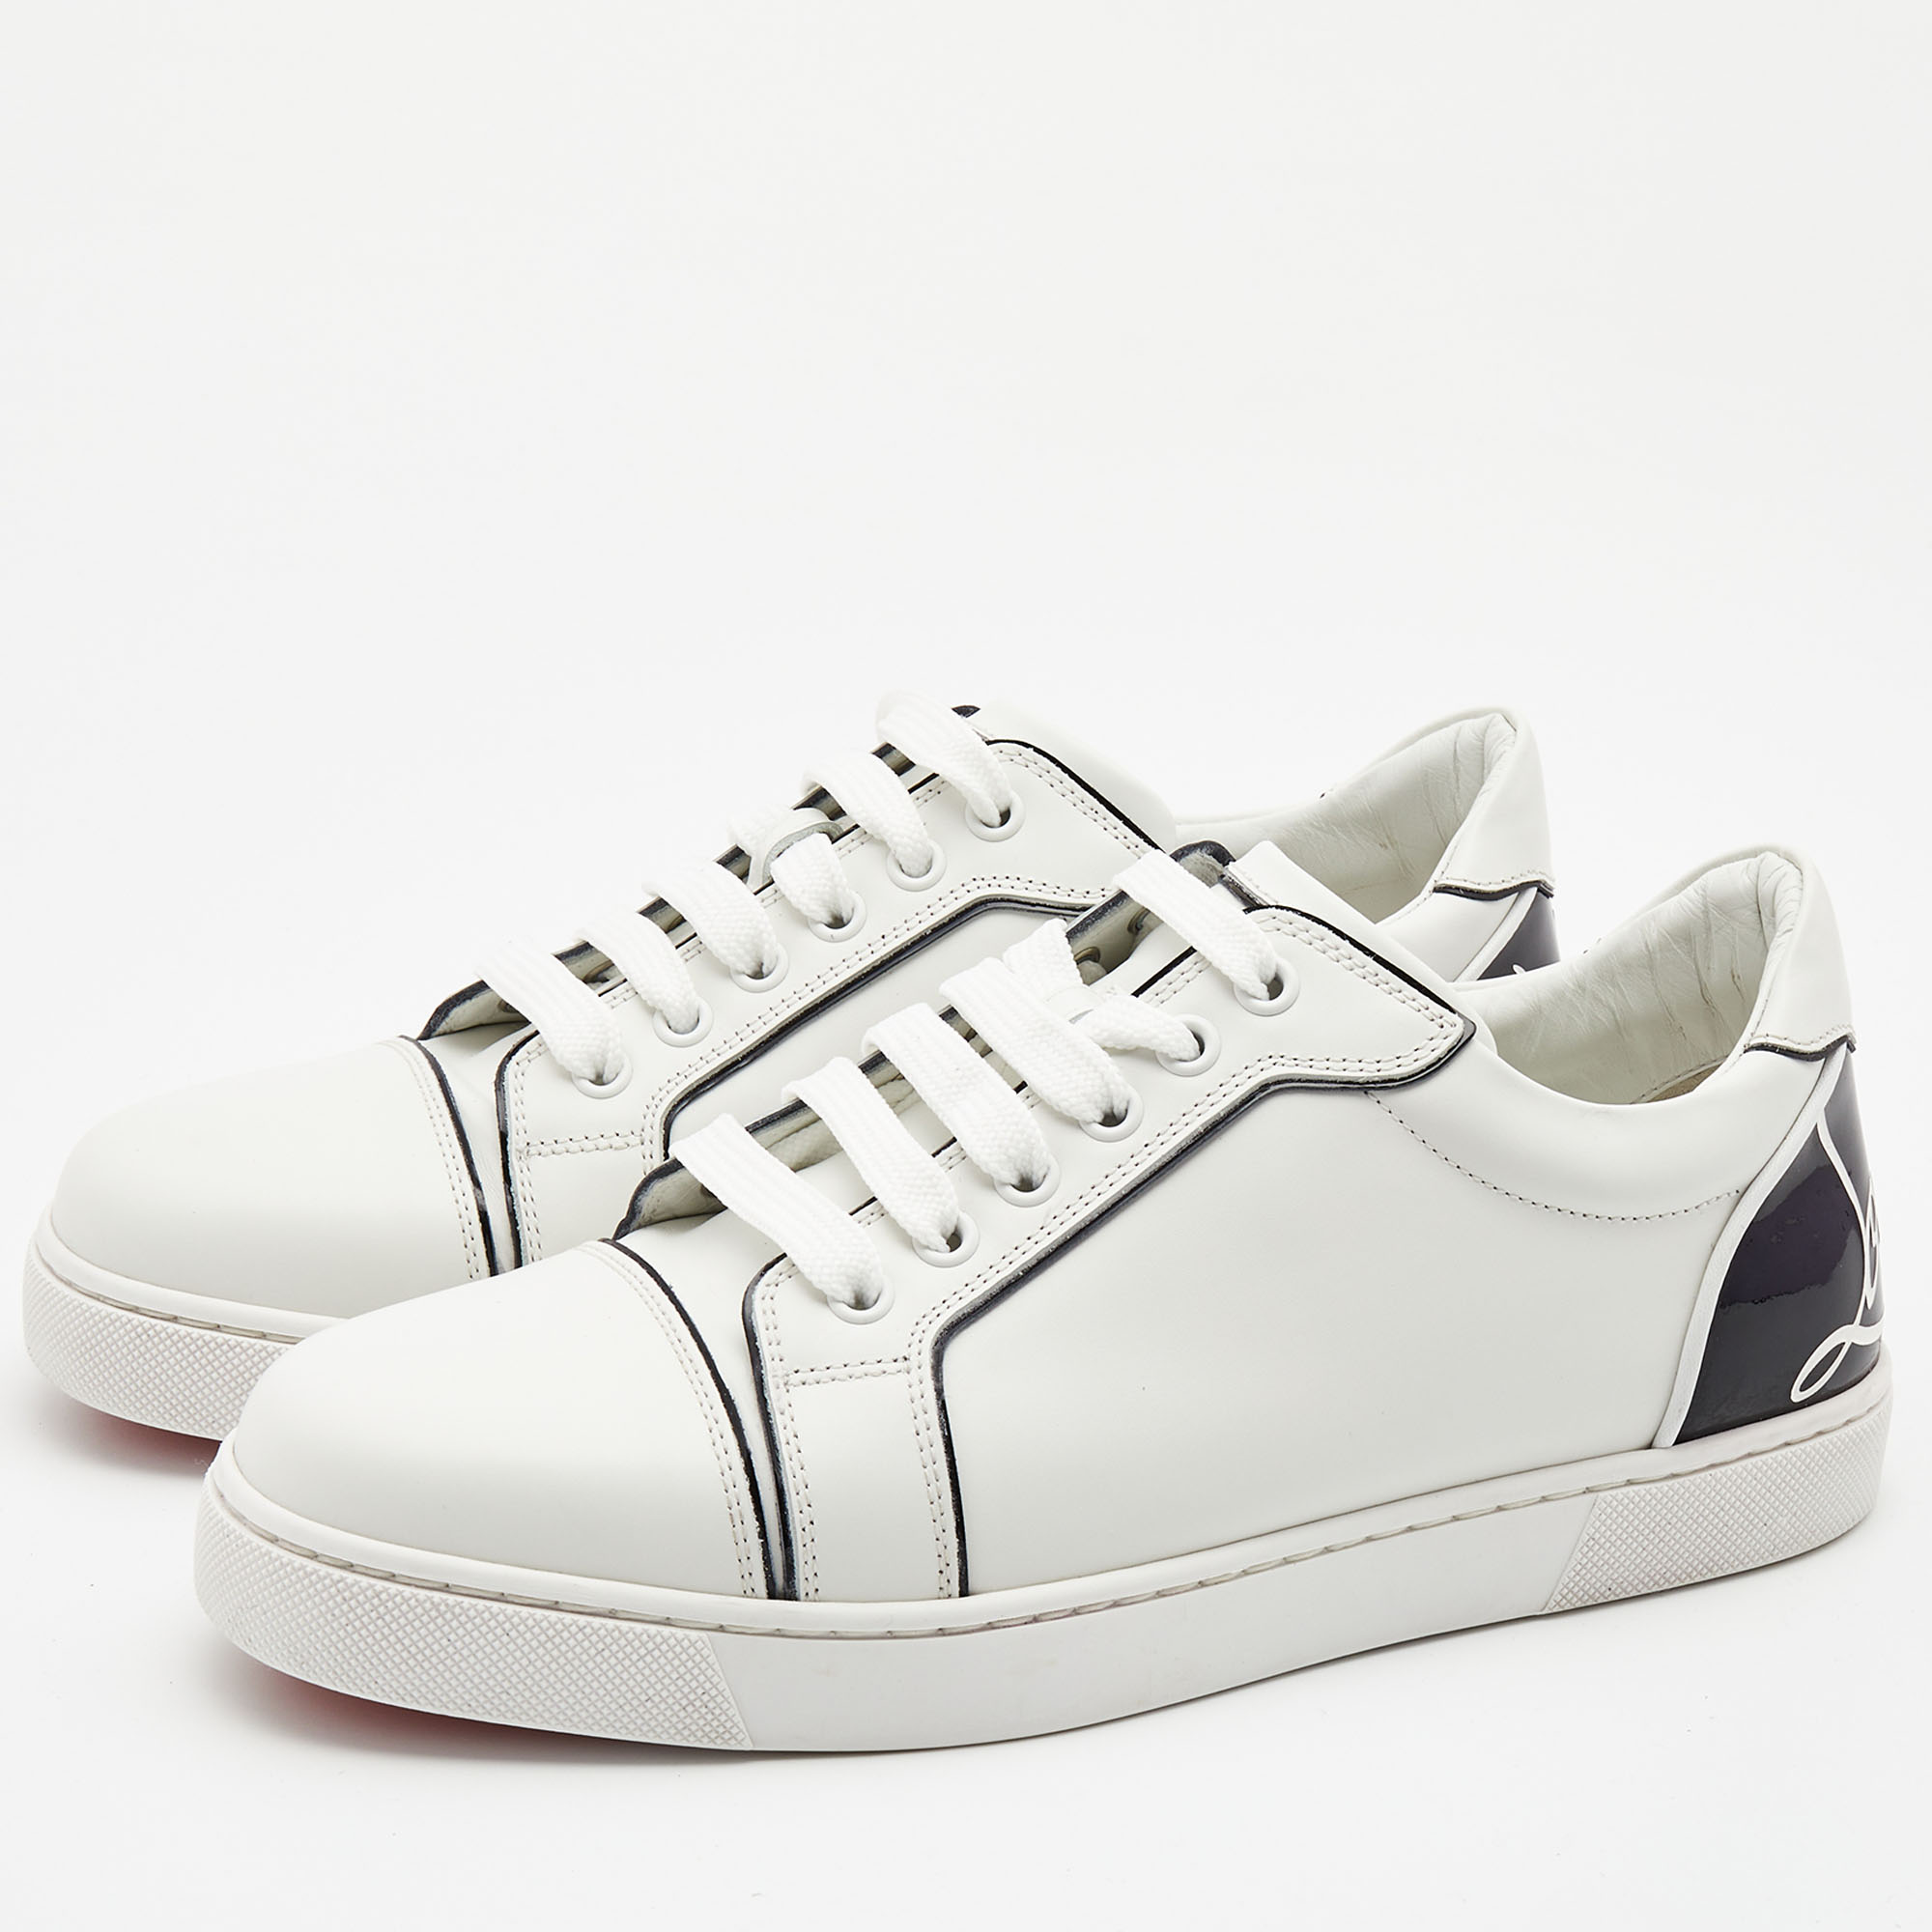 

Christian Louboutin Black/White Leather Fun Vieira Low Top Sneakers Size